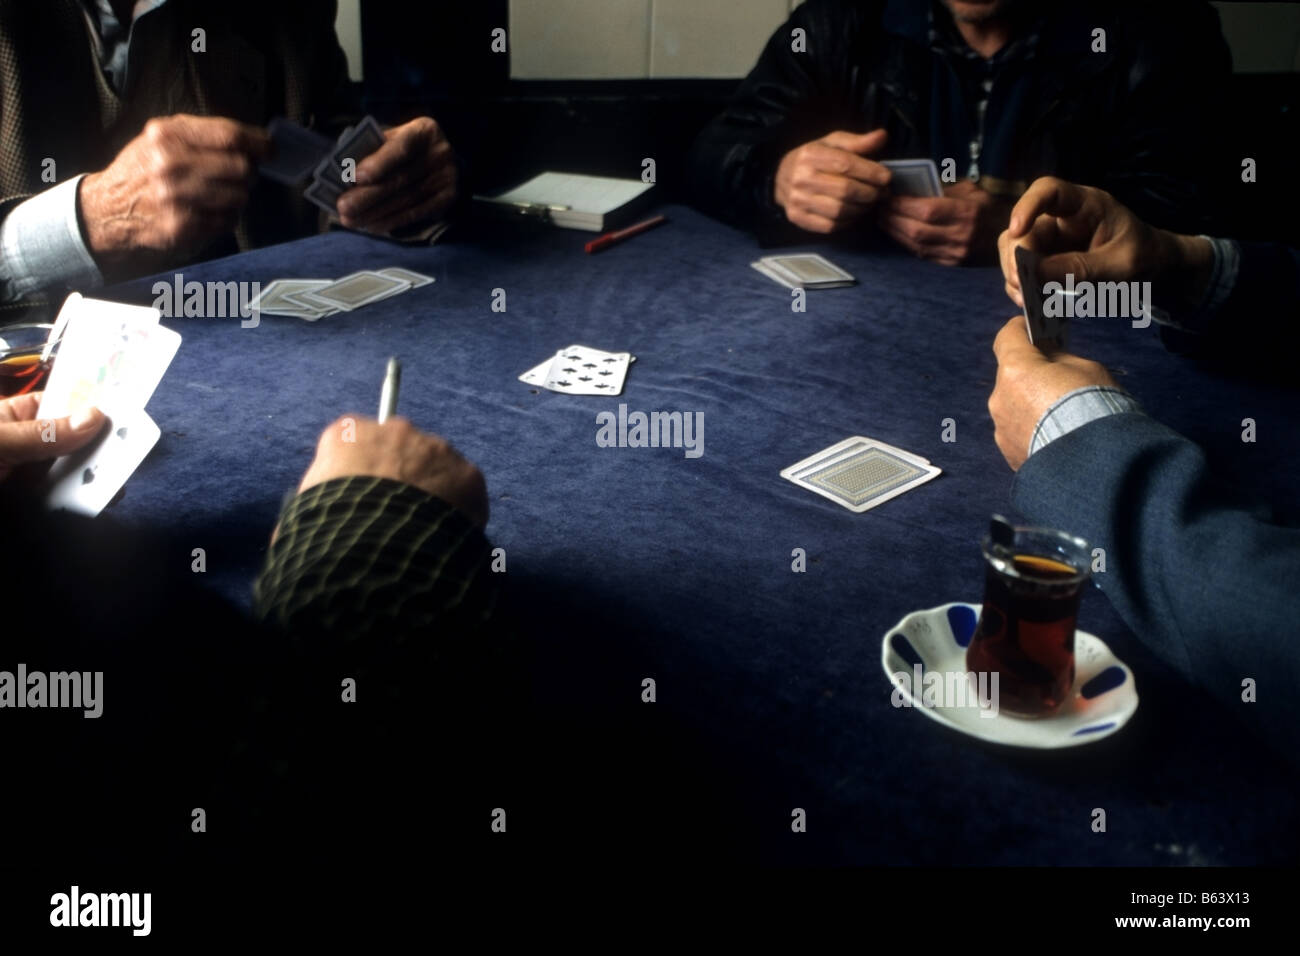 turkish men playing cards Stock Photo